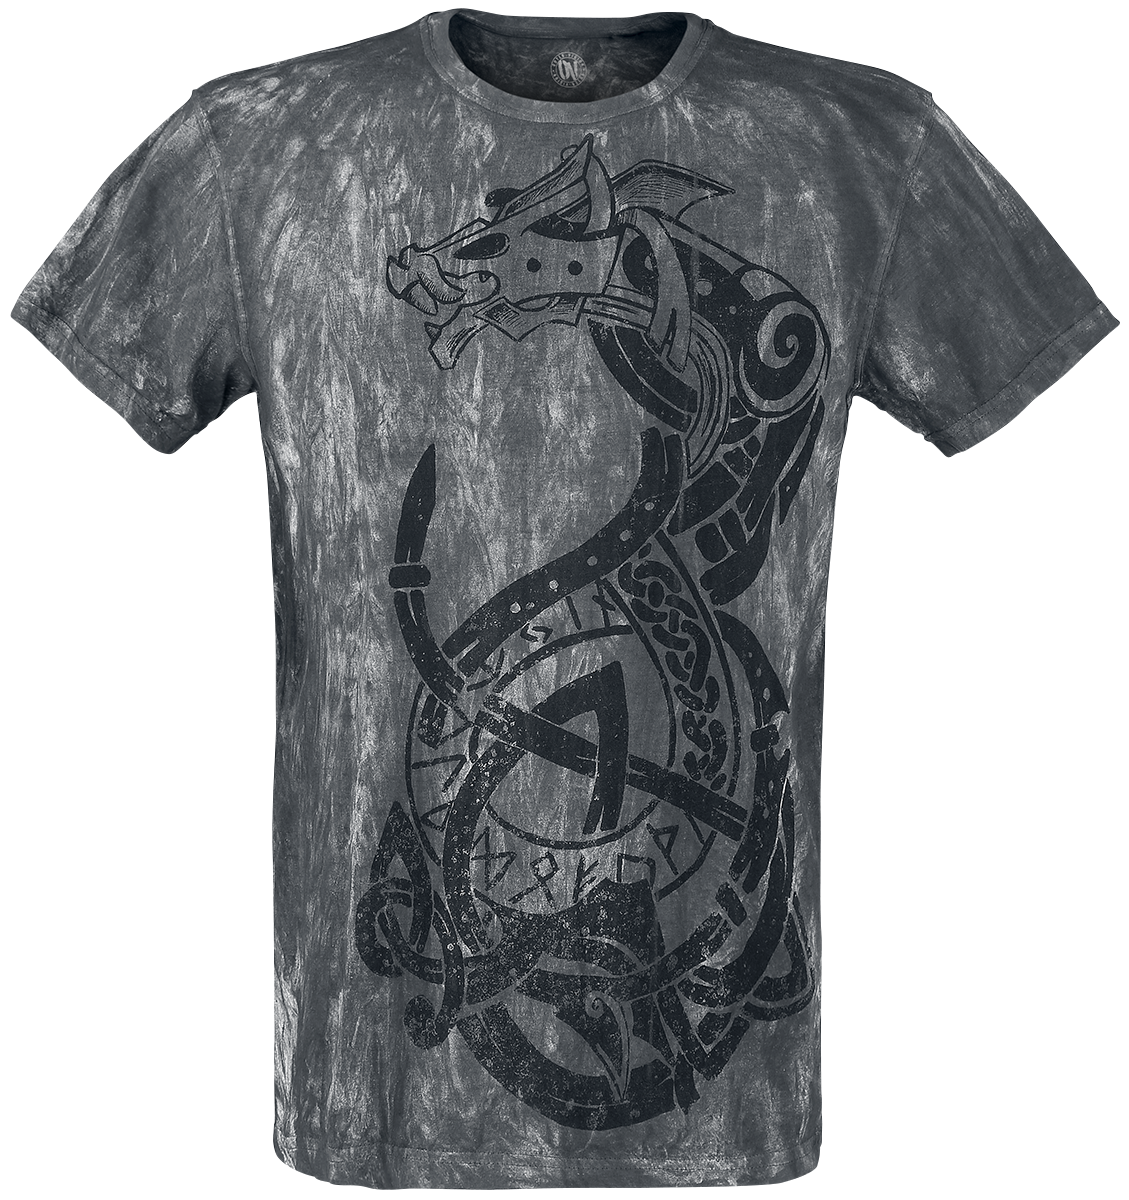 Outer Vision - Viking Warrior - T-Shirt - grey image